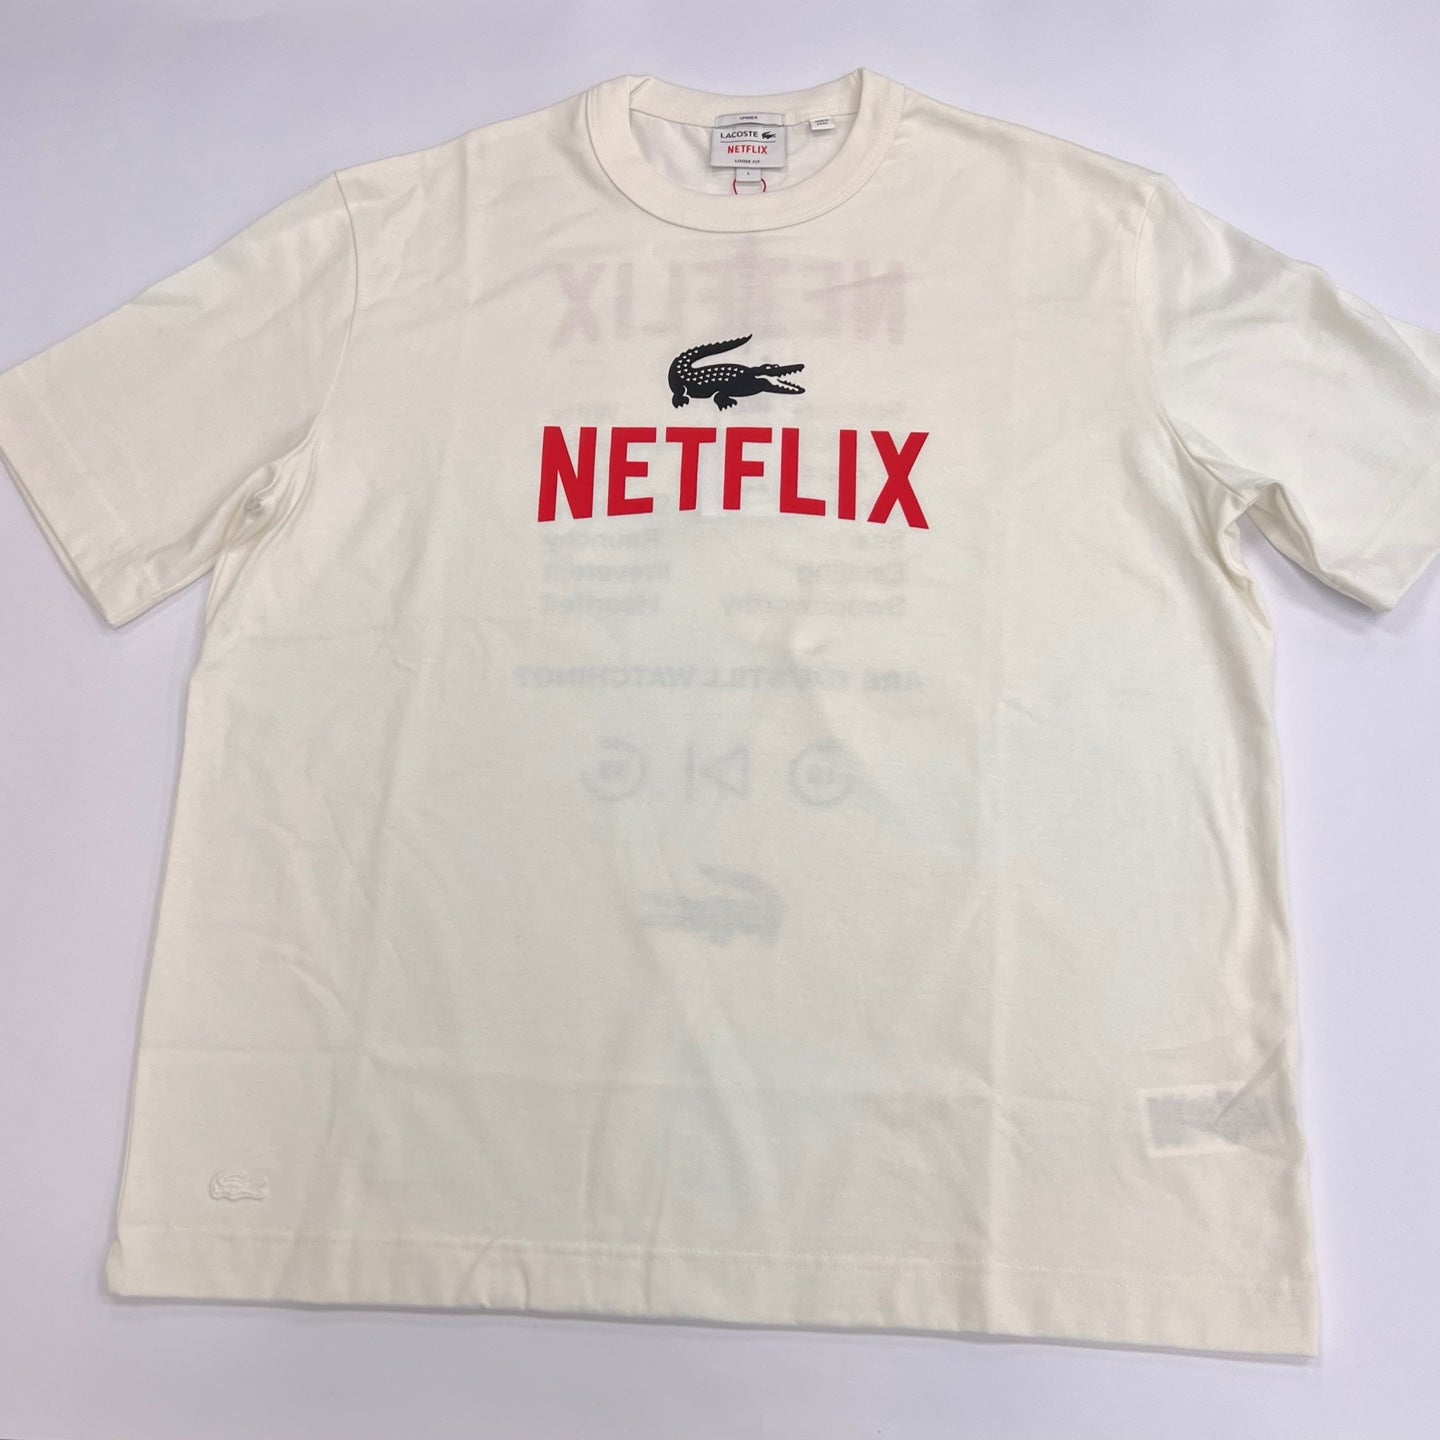 LACOSTE x NETFLIX Unisex Loose Fit Organic Cotton T-shirt